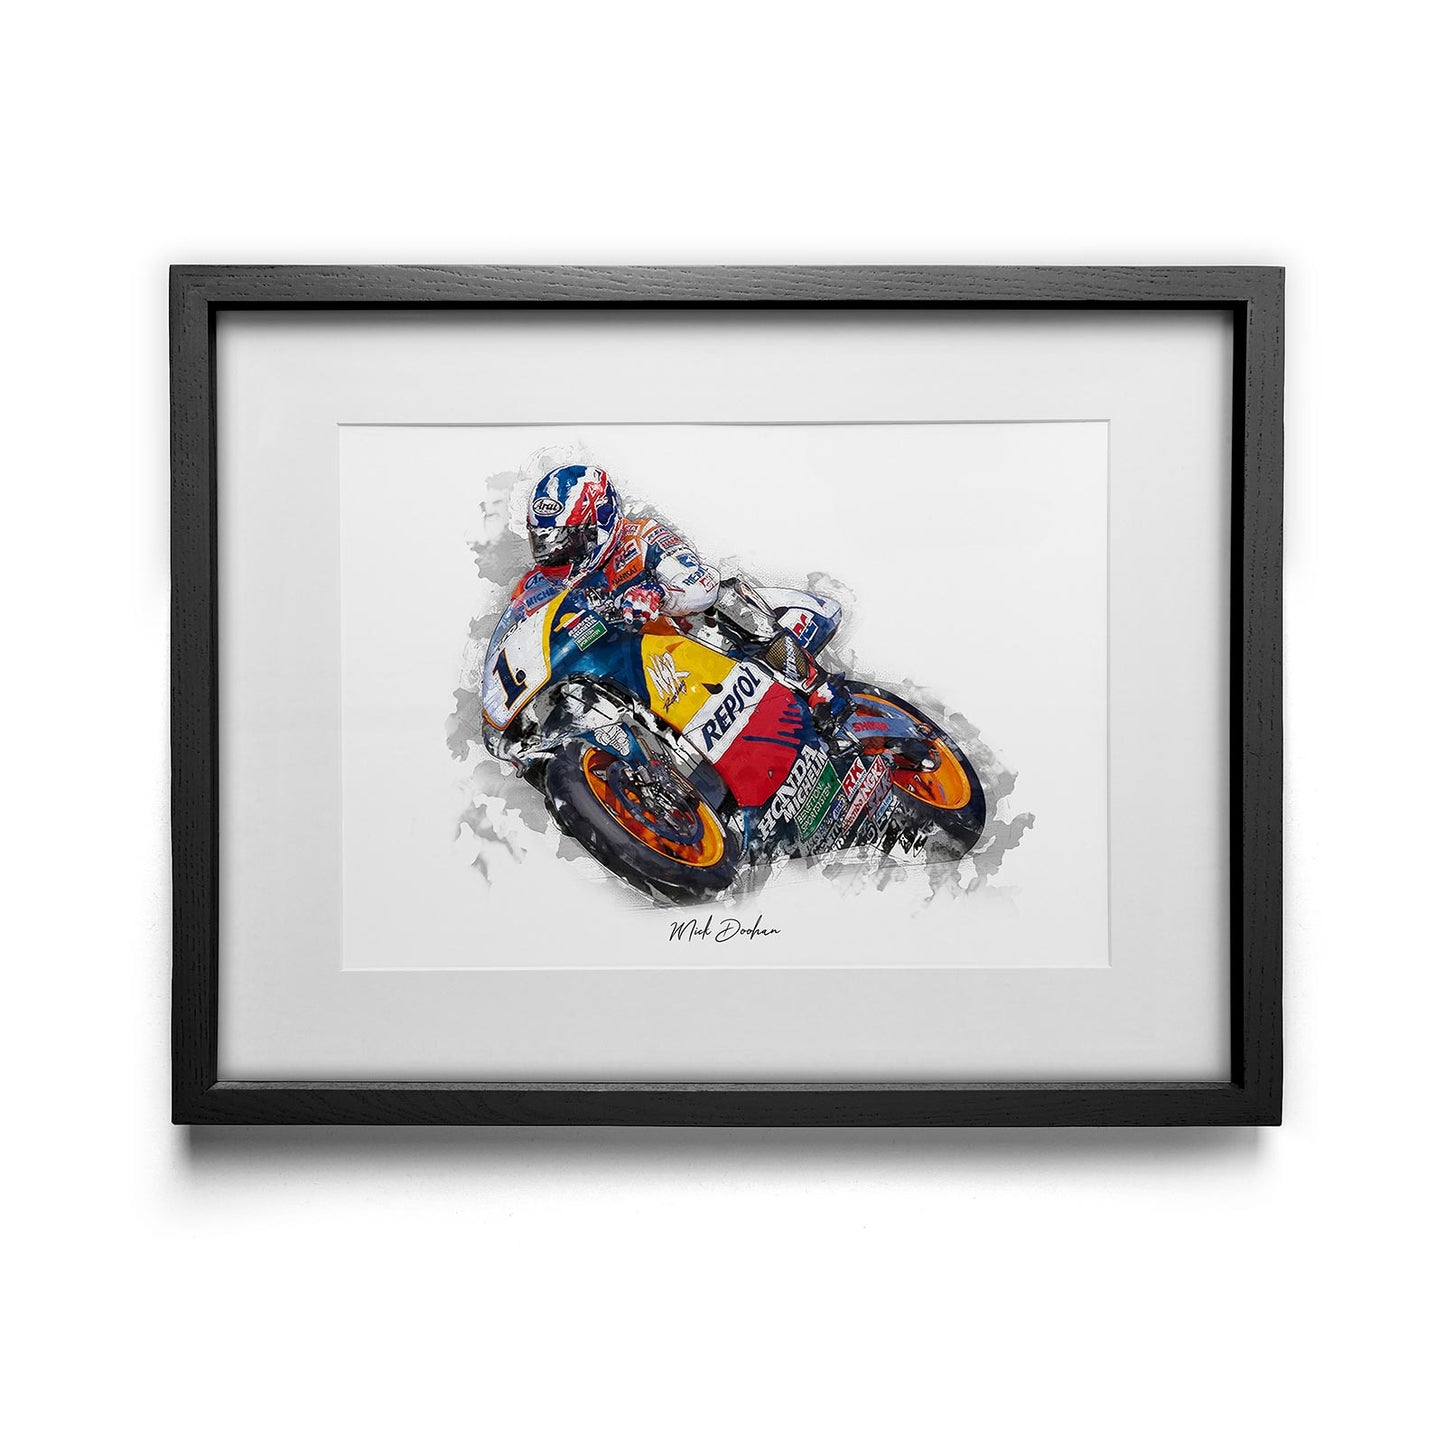 Mick Doohan - Kunstdruck gerahmt - 40 x 30  cm